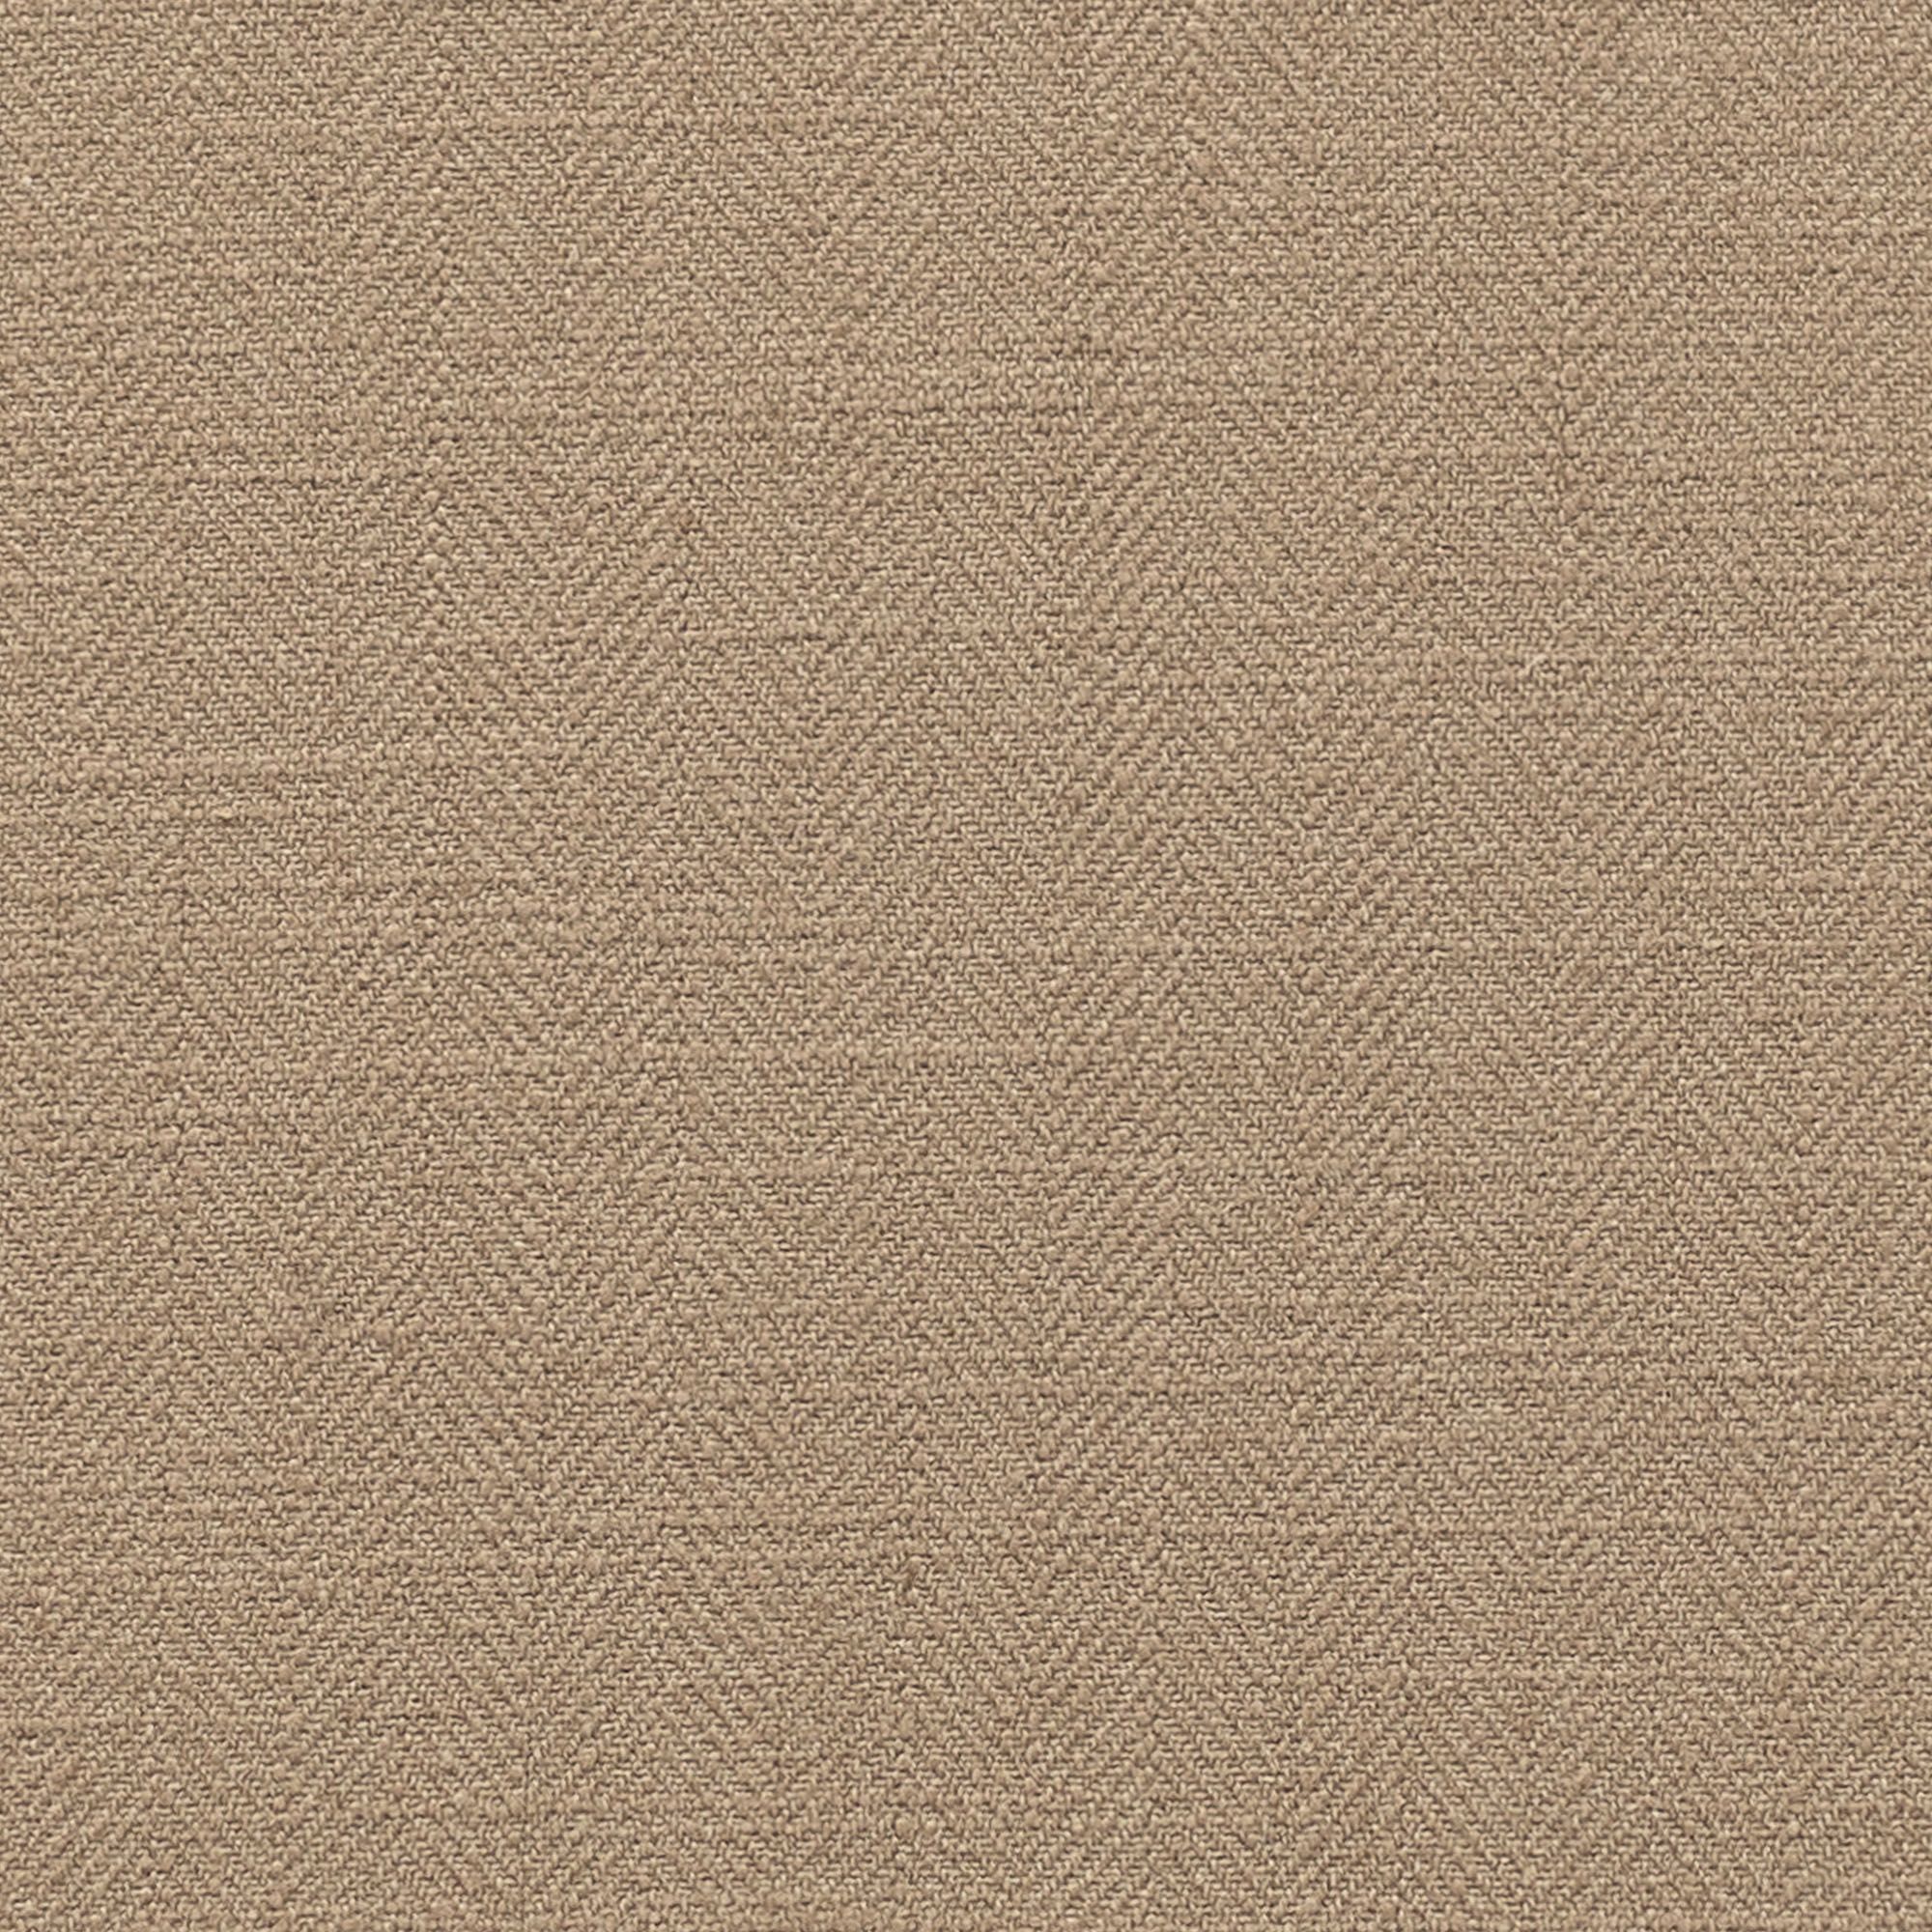 Gir Camel Cotton Linen Blend  Fabric Swatch 6" x 6"